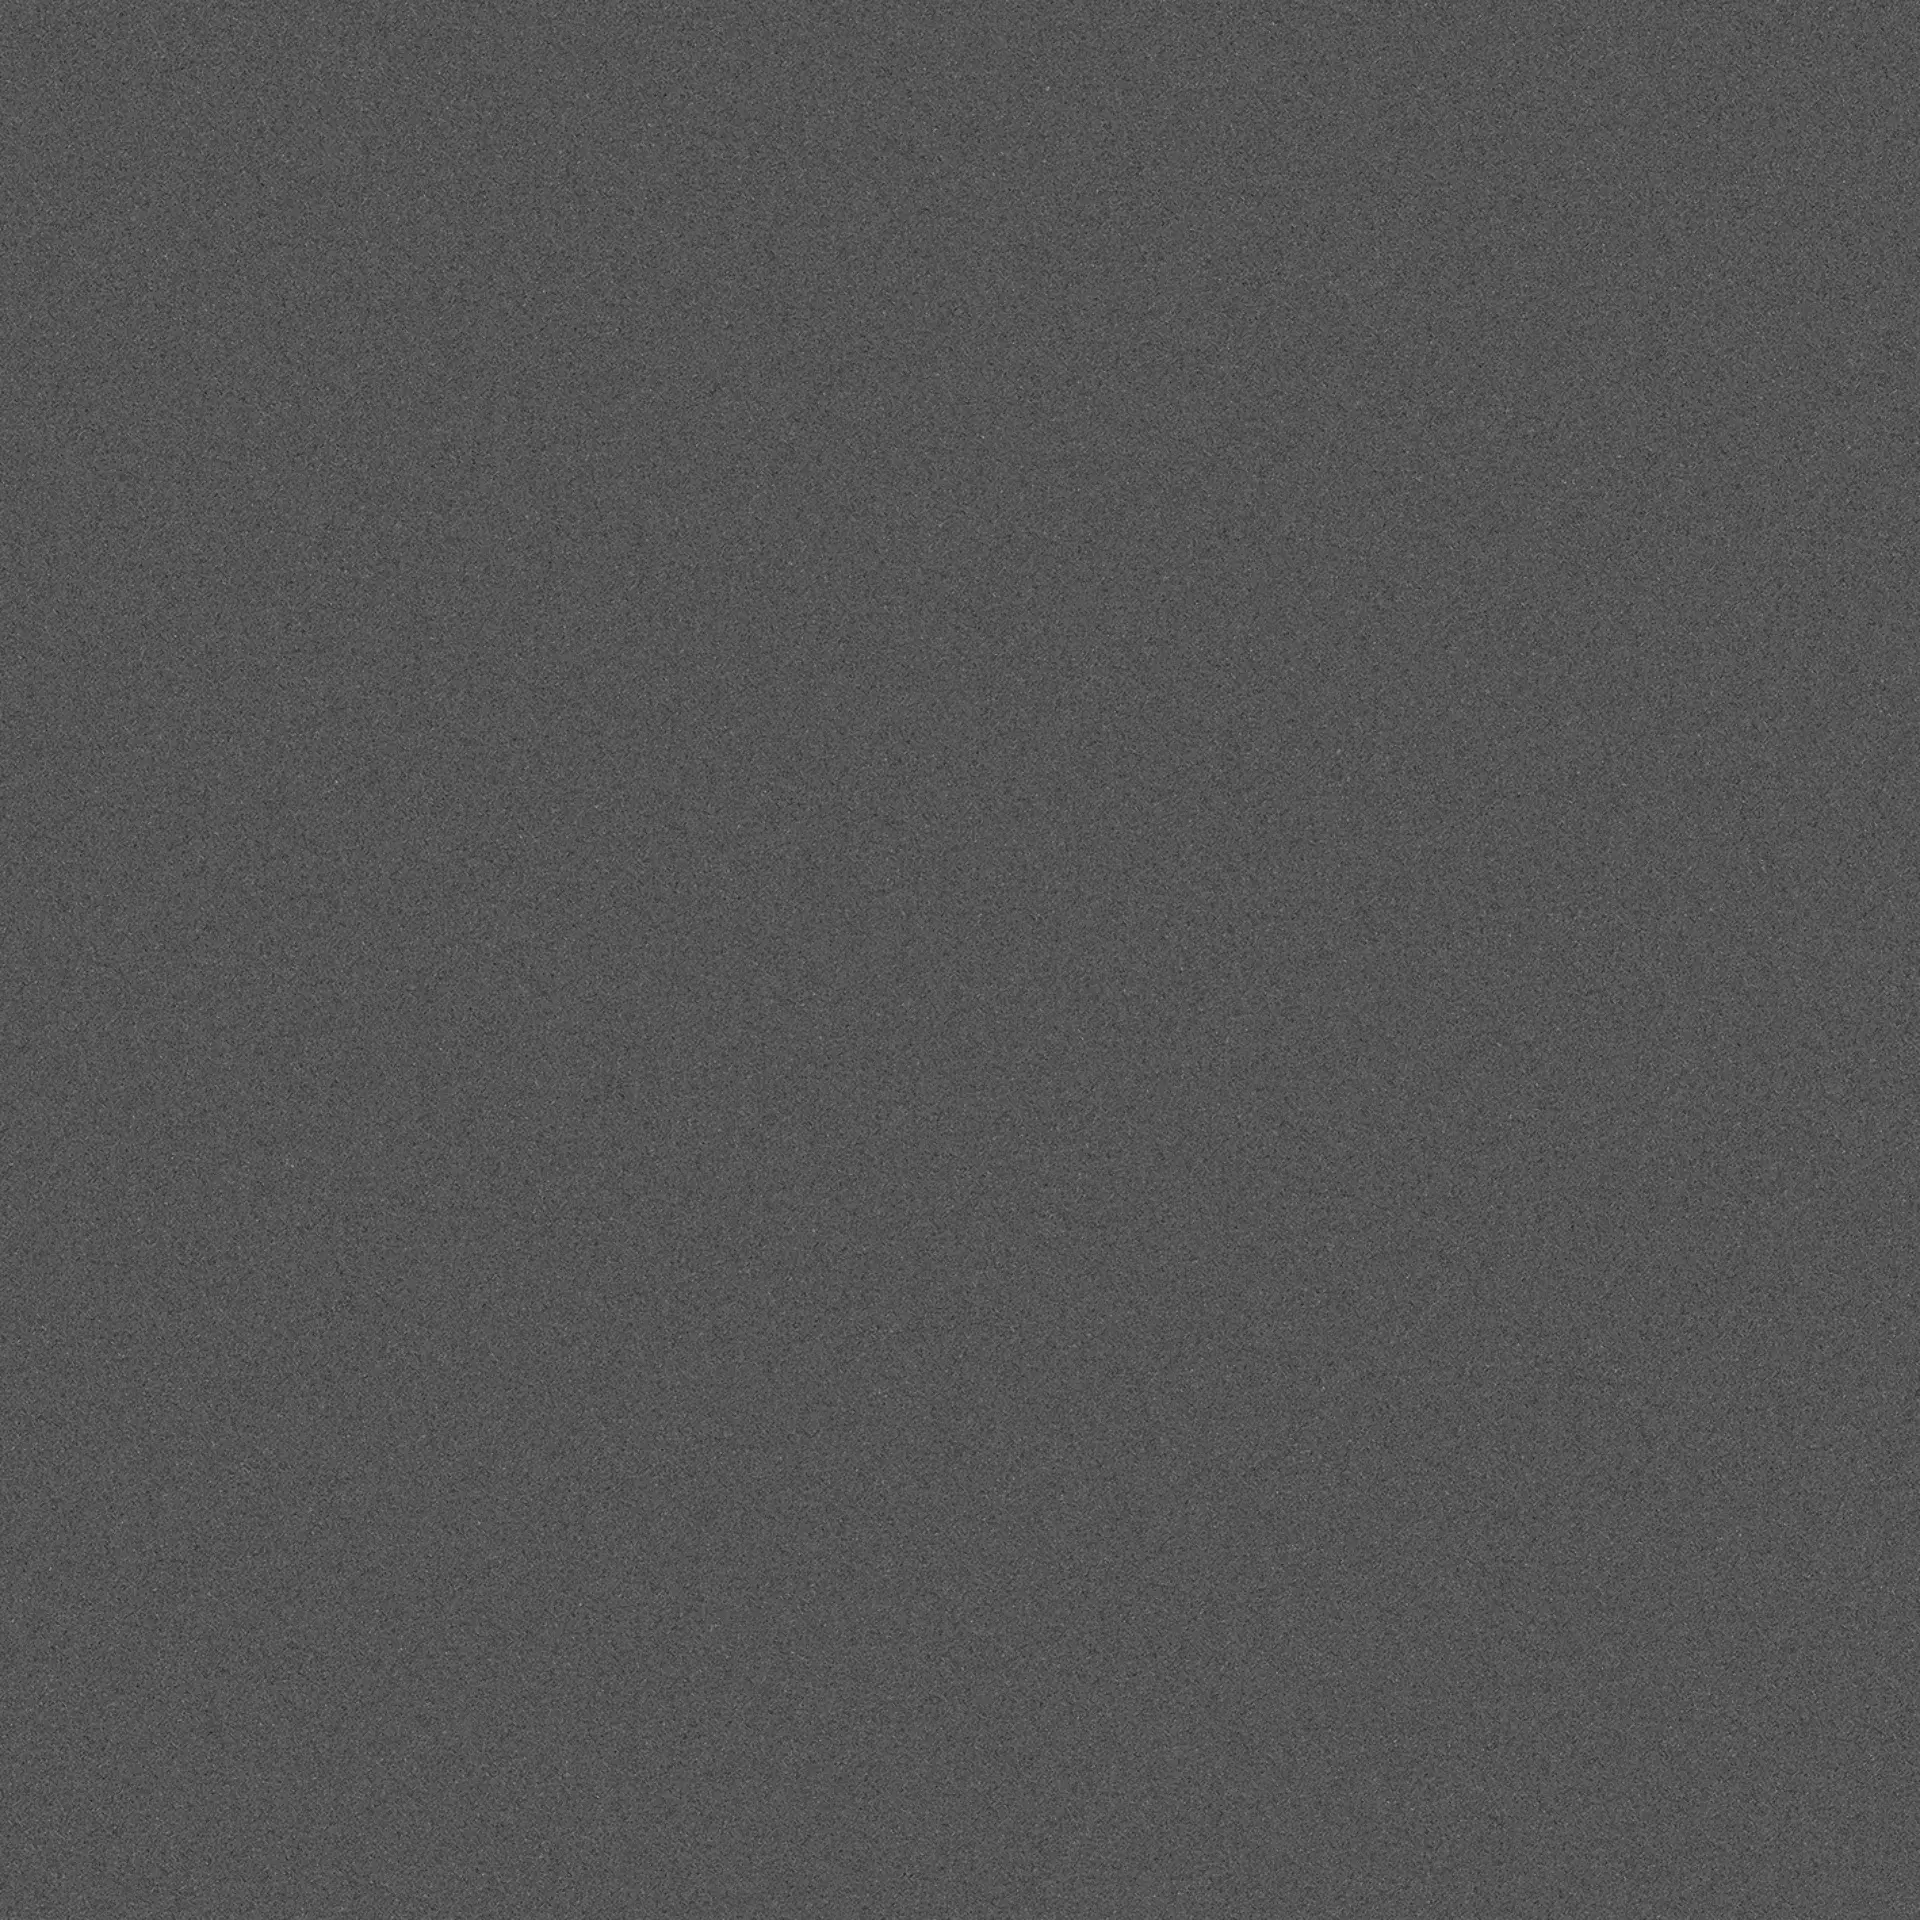 Wandfliese,Bodenfliese Villeroy & Boch Pure Line 2.0 Asphalt Grey Matt Asphalt Grey 2750-UL90 matt 120x120cm rektifiziert 12mm